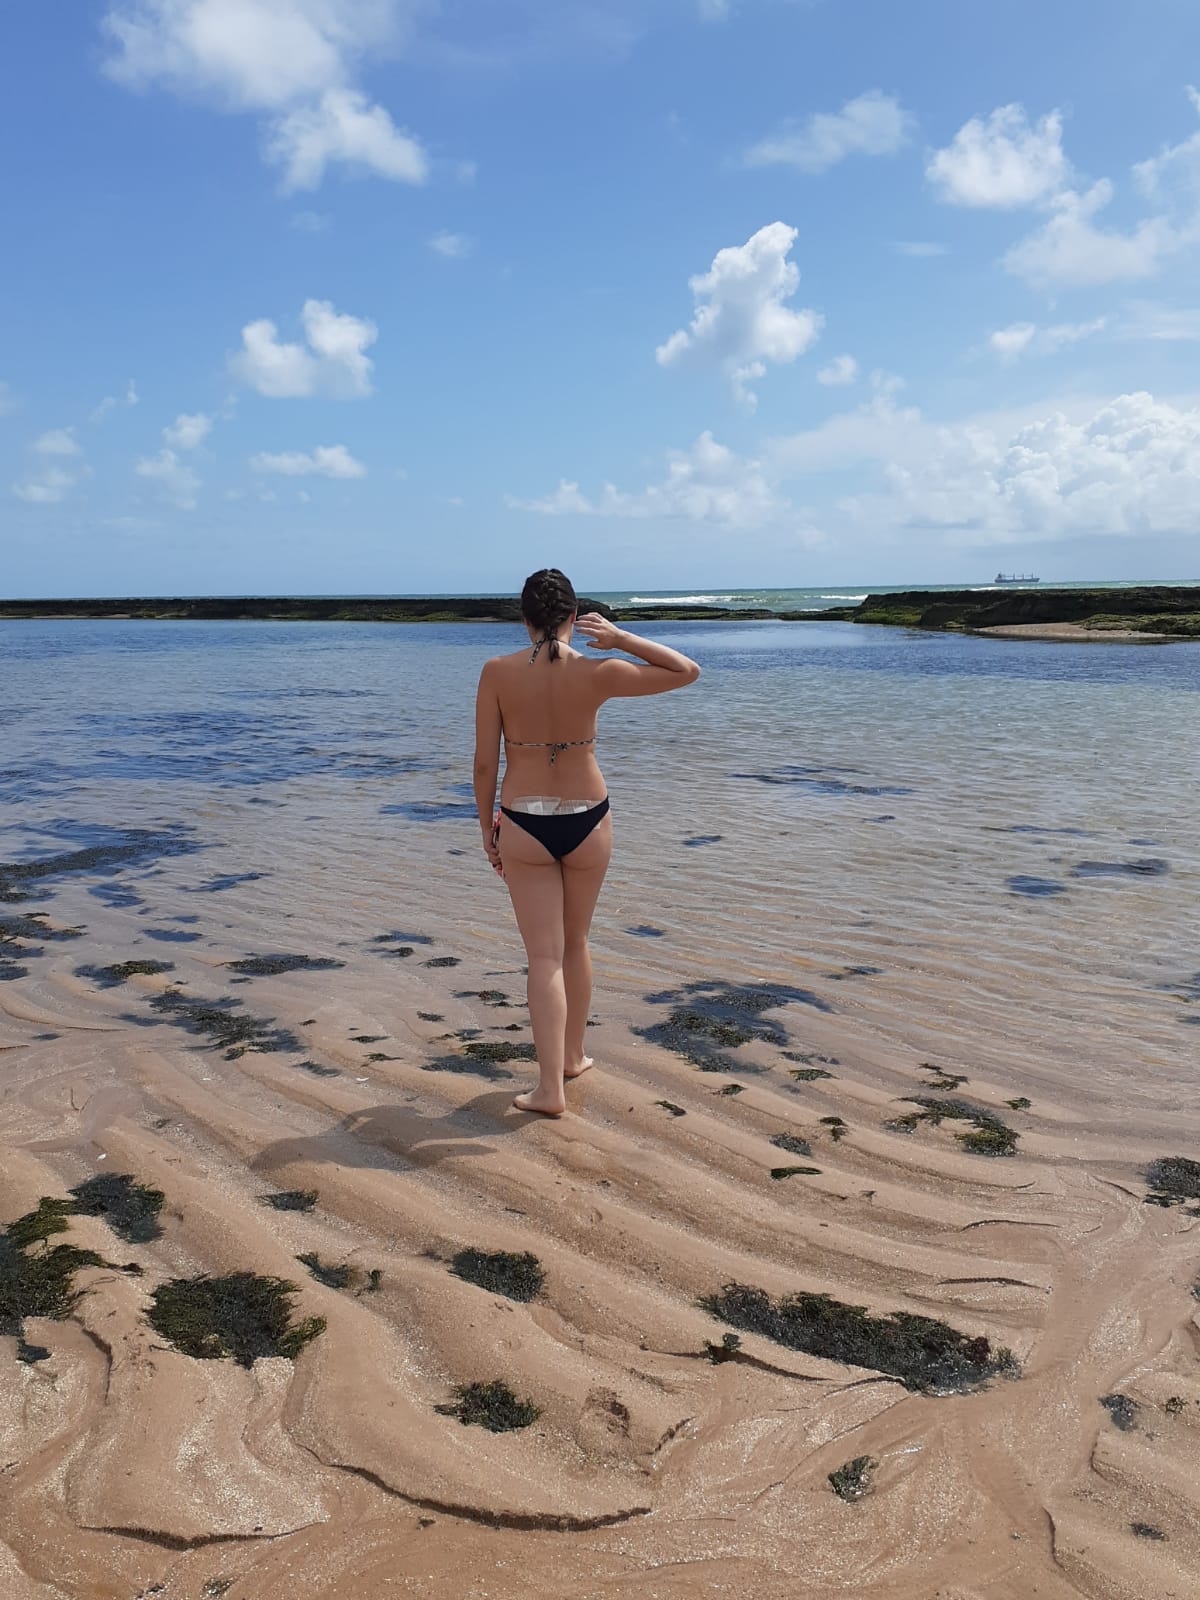 Mulher de costas na praia em Recife. Bauruense que viajou mais de 2 mil km para doar medula óssea relata sua experiência: "Faria tudo de novo"